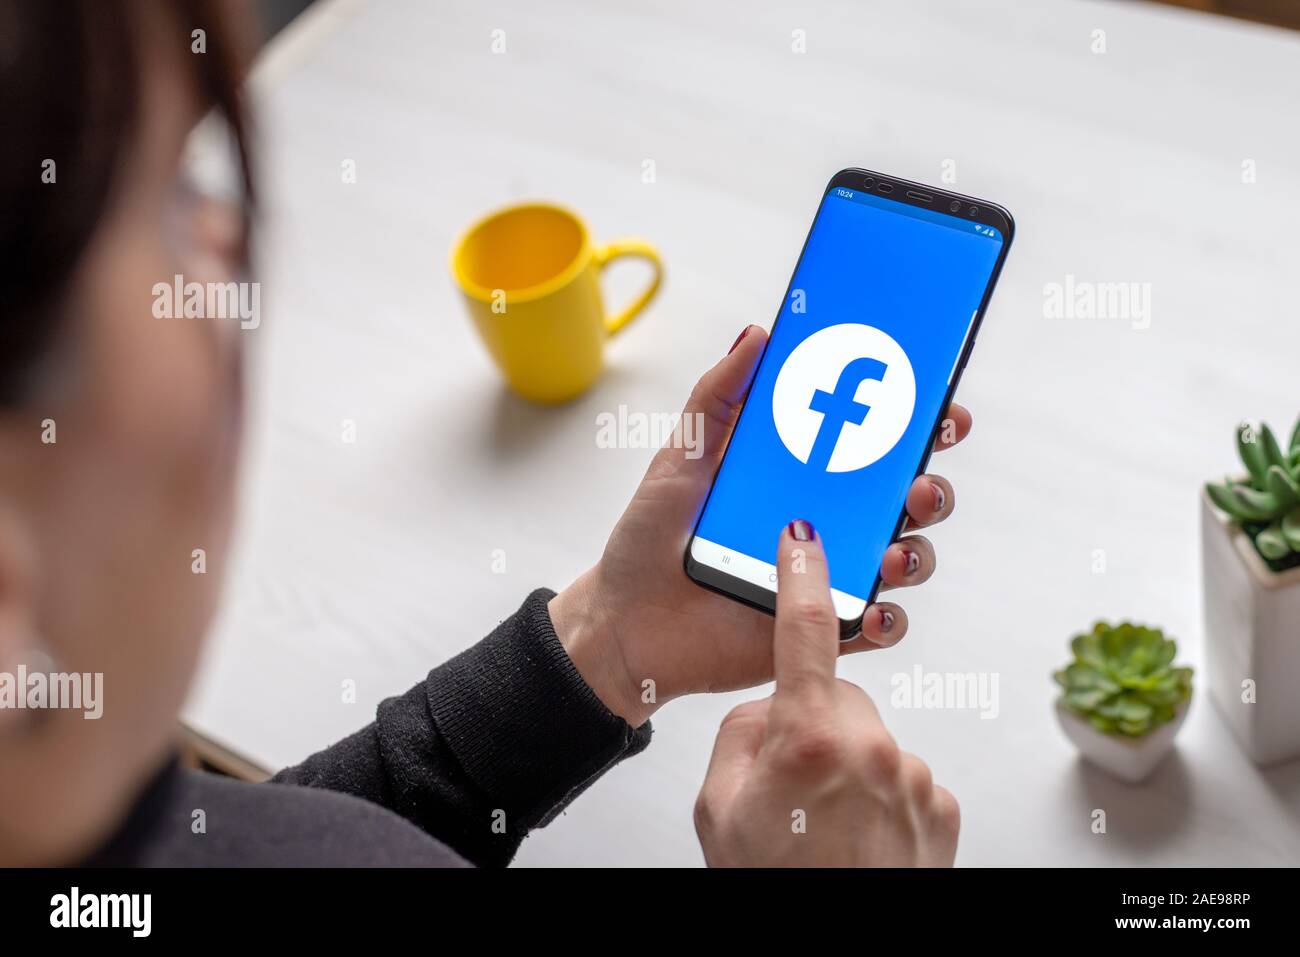 Sarajevo, Bosnie-Herzégovine - décembre 7, 2019 : utilise l'application Facebook pour communiquer avec vos amis sur un Samsung Galaxy S9 téléphone mobile Banque D'Images